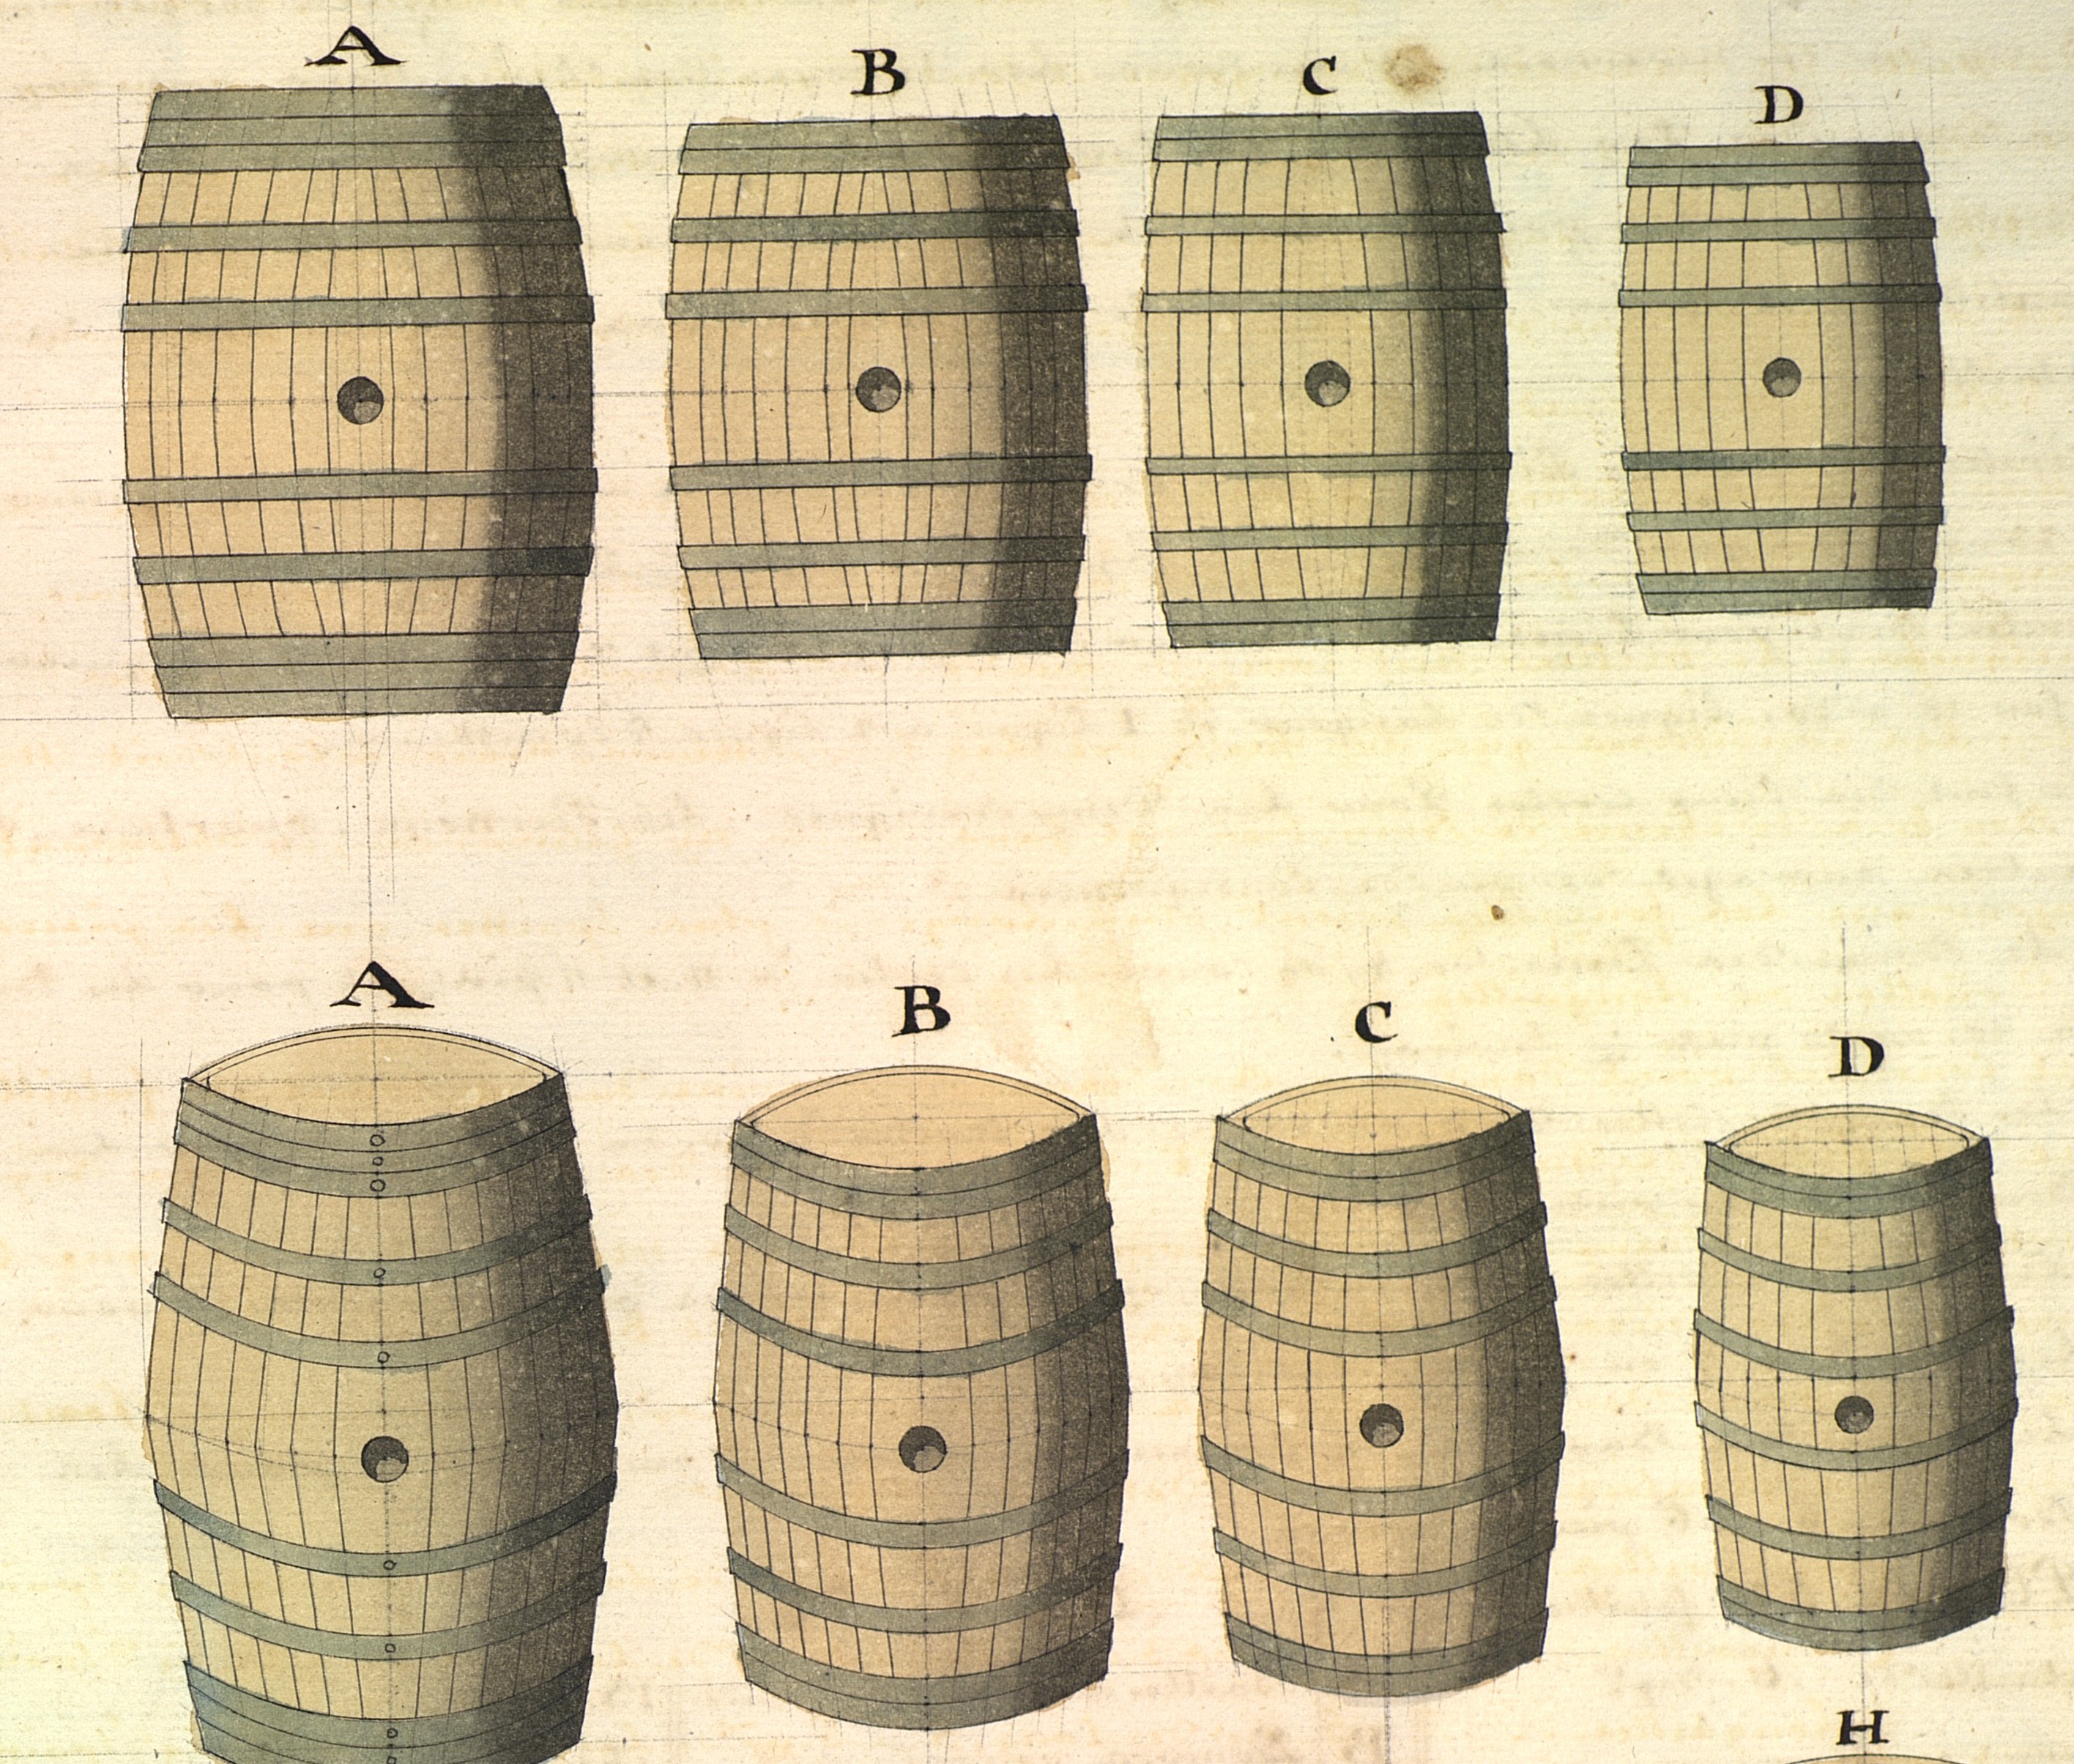 On parle souvent, au XVIIIe siècle, de la nécessité d’aiguades pour remplir les futailles ; voici ces modèles de tonneaux en usage dans la marine de l’époque.